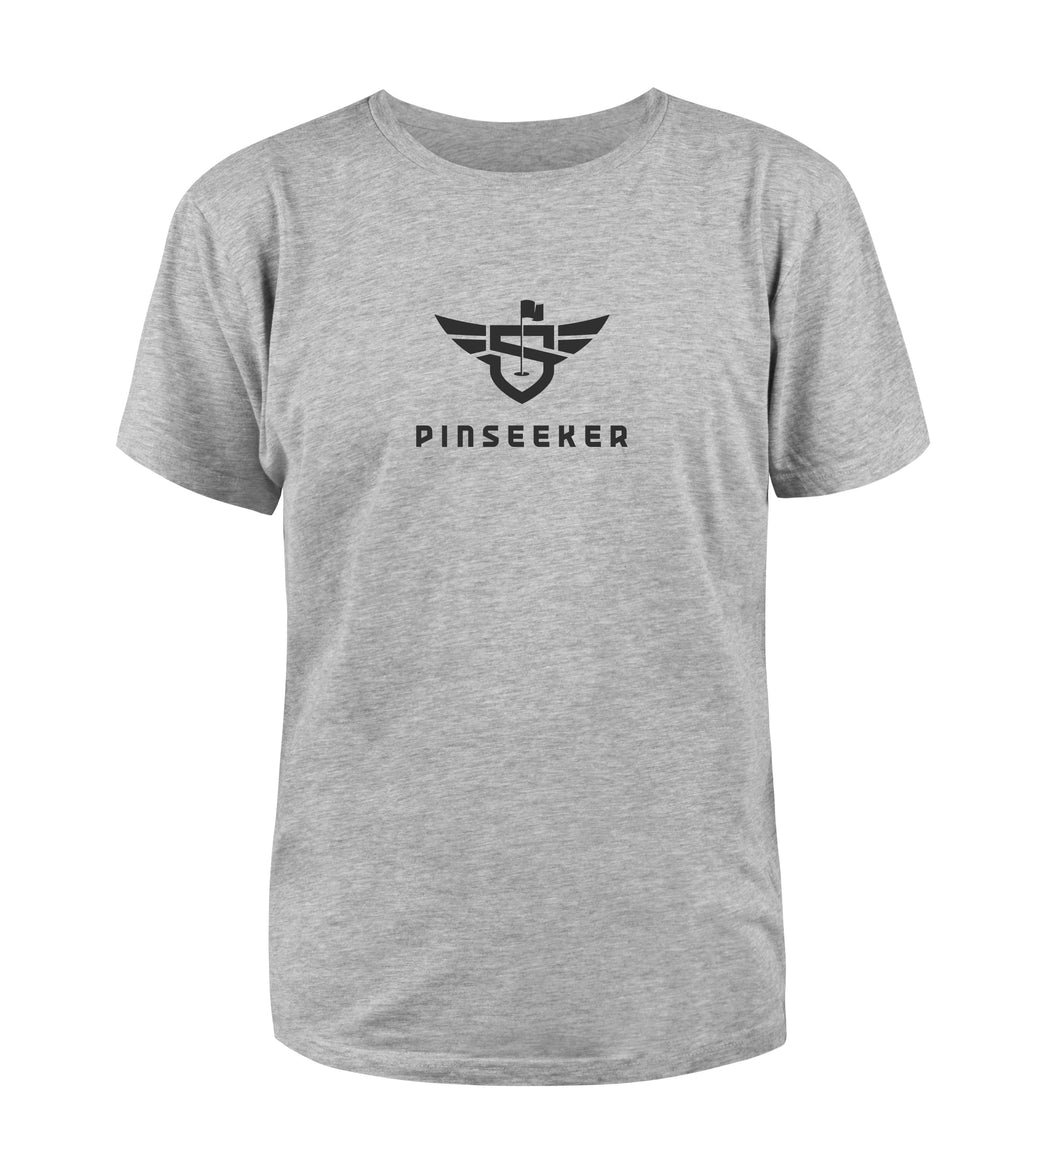 PinSeeker Unisex Tshirt Grey